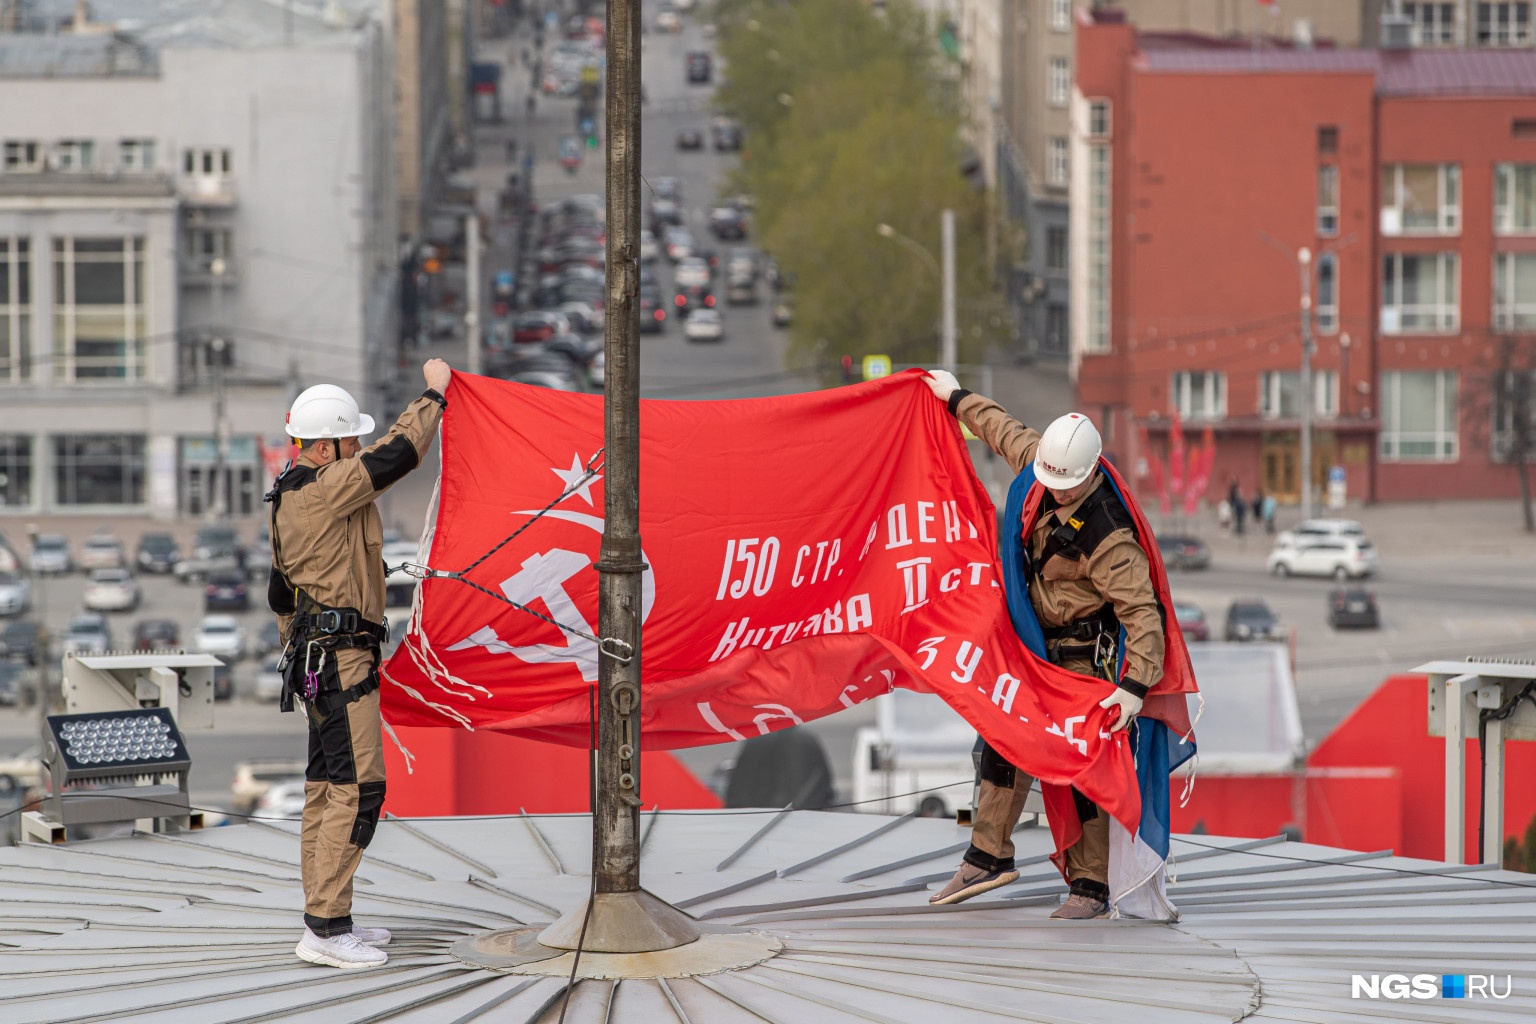 На красном полотнище знамени написано: «150 стр. ордена Кутузова II ст. идрицк. див. 79 C.К. 3 У. А. 1 Б. Ф.» (это же было написано на знамени, которое в 1945 году водрузили на здание рейхстага)